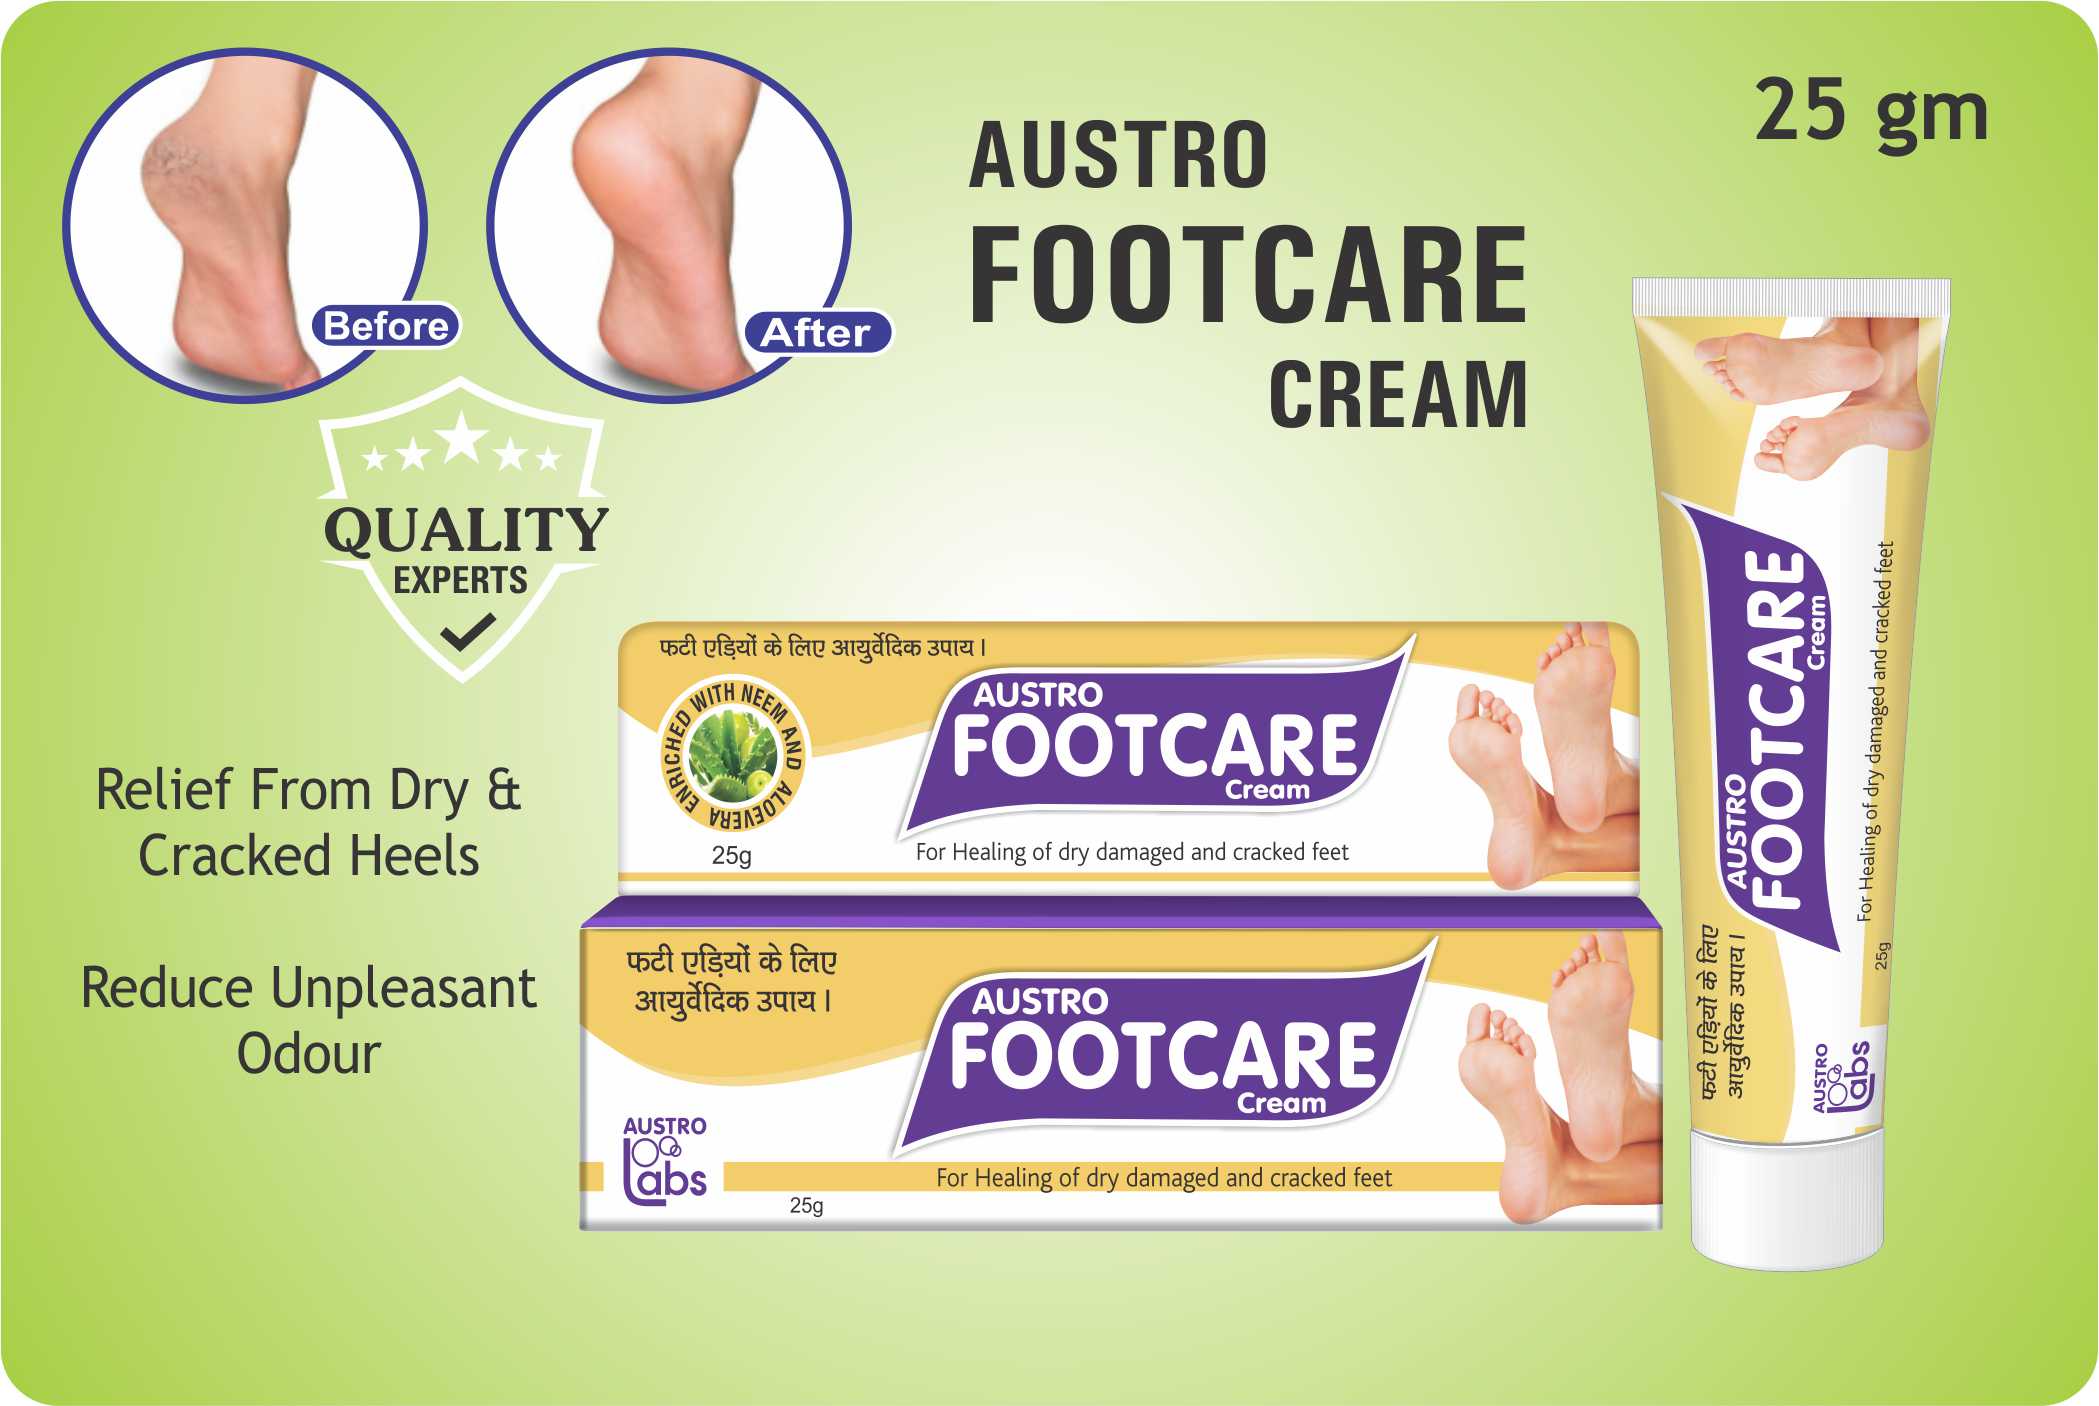 Austro Footcare Cream